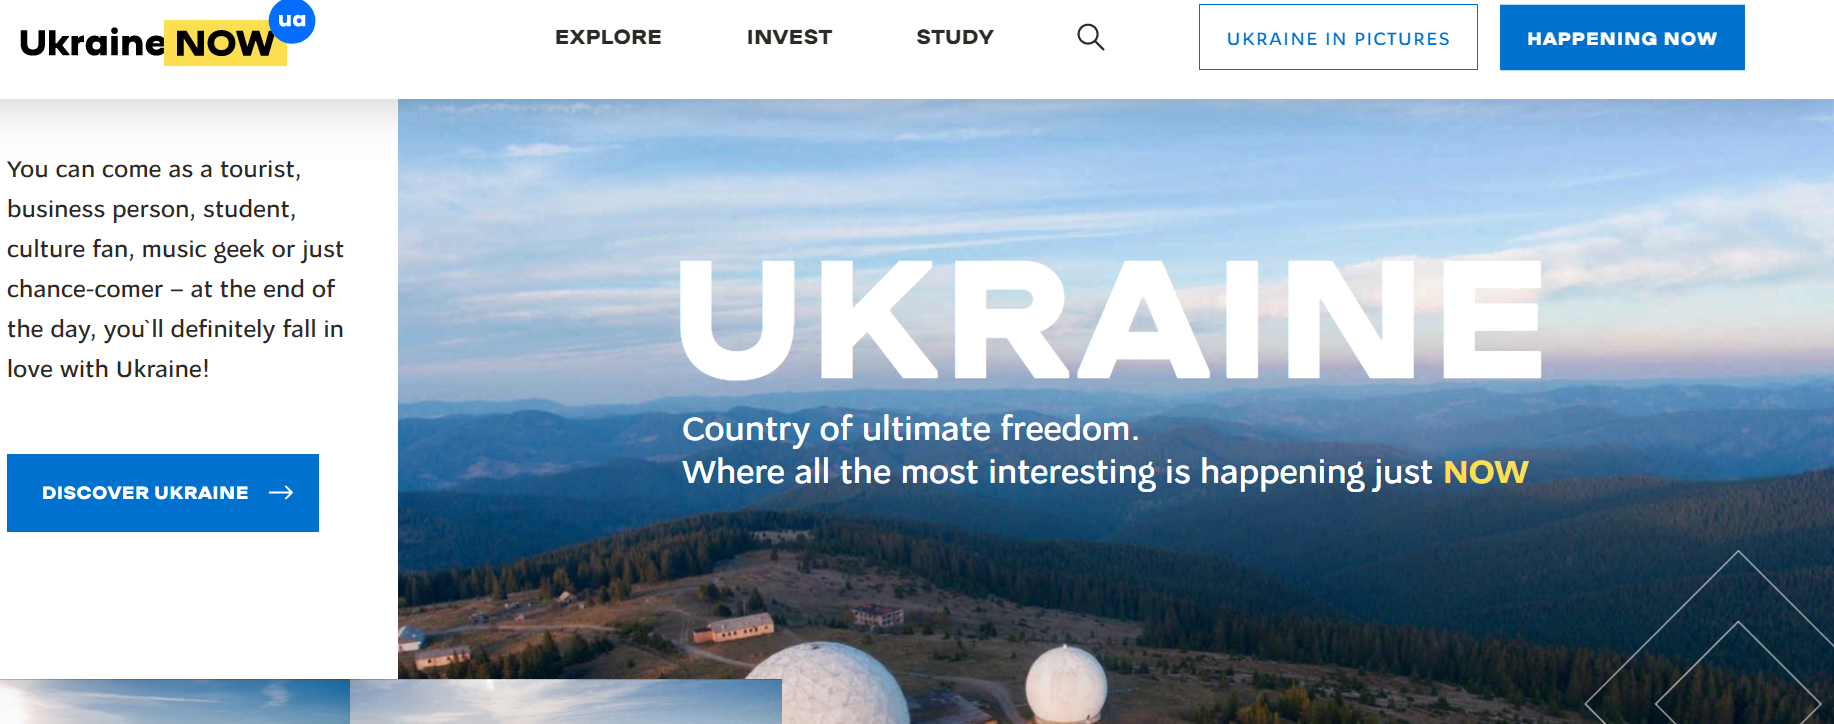 МИД запустил сайт для популяризации Украины в мире. О чем рассказывают? (ФОТО, ВИДЕО) 1